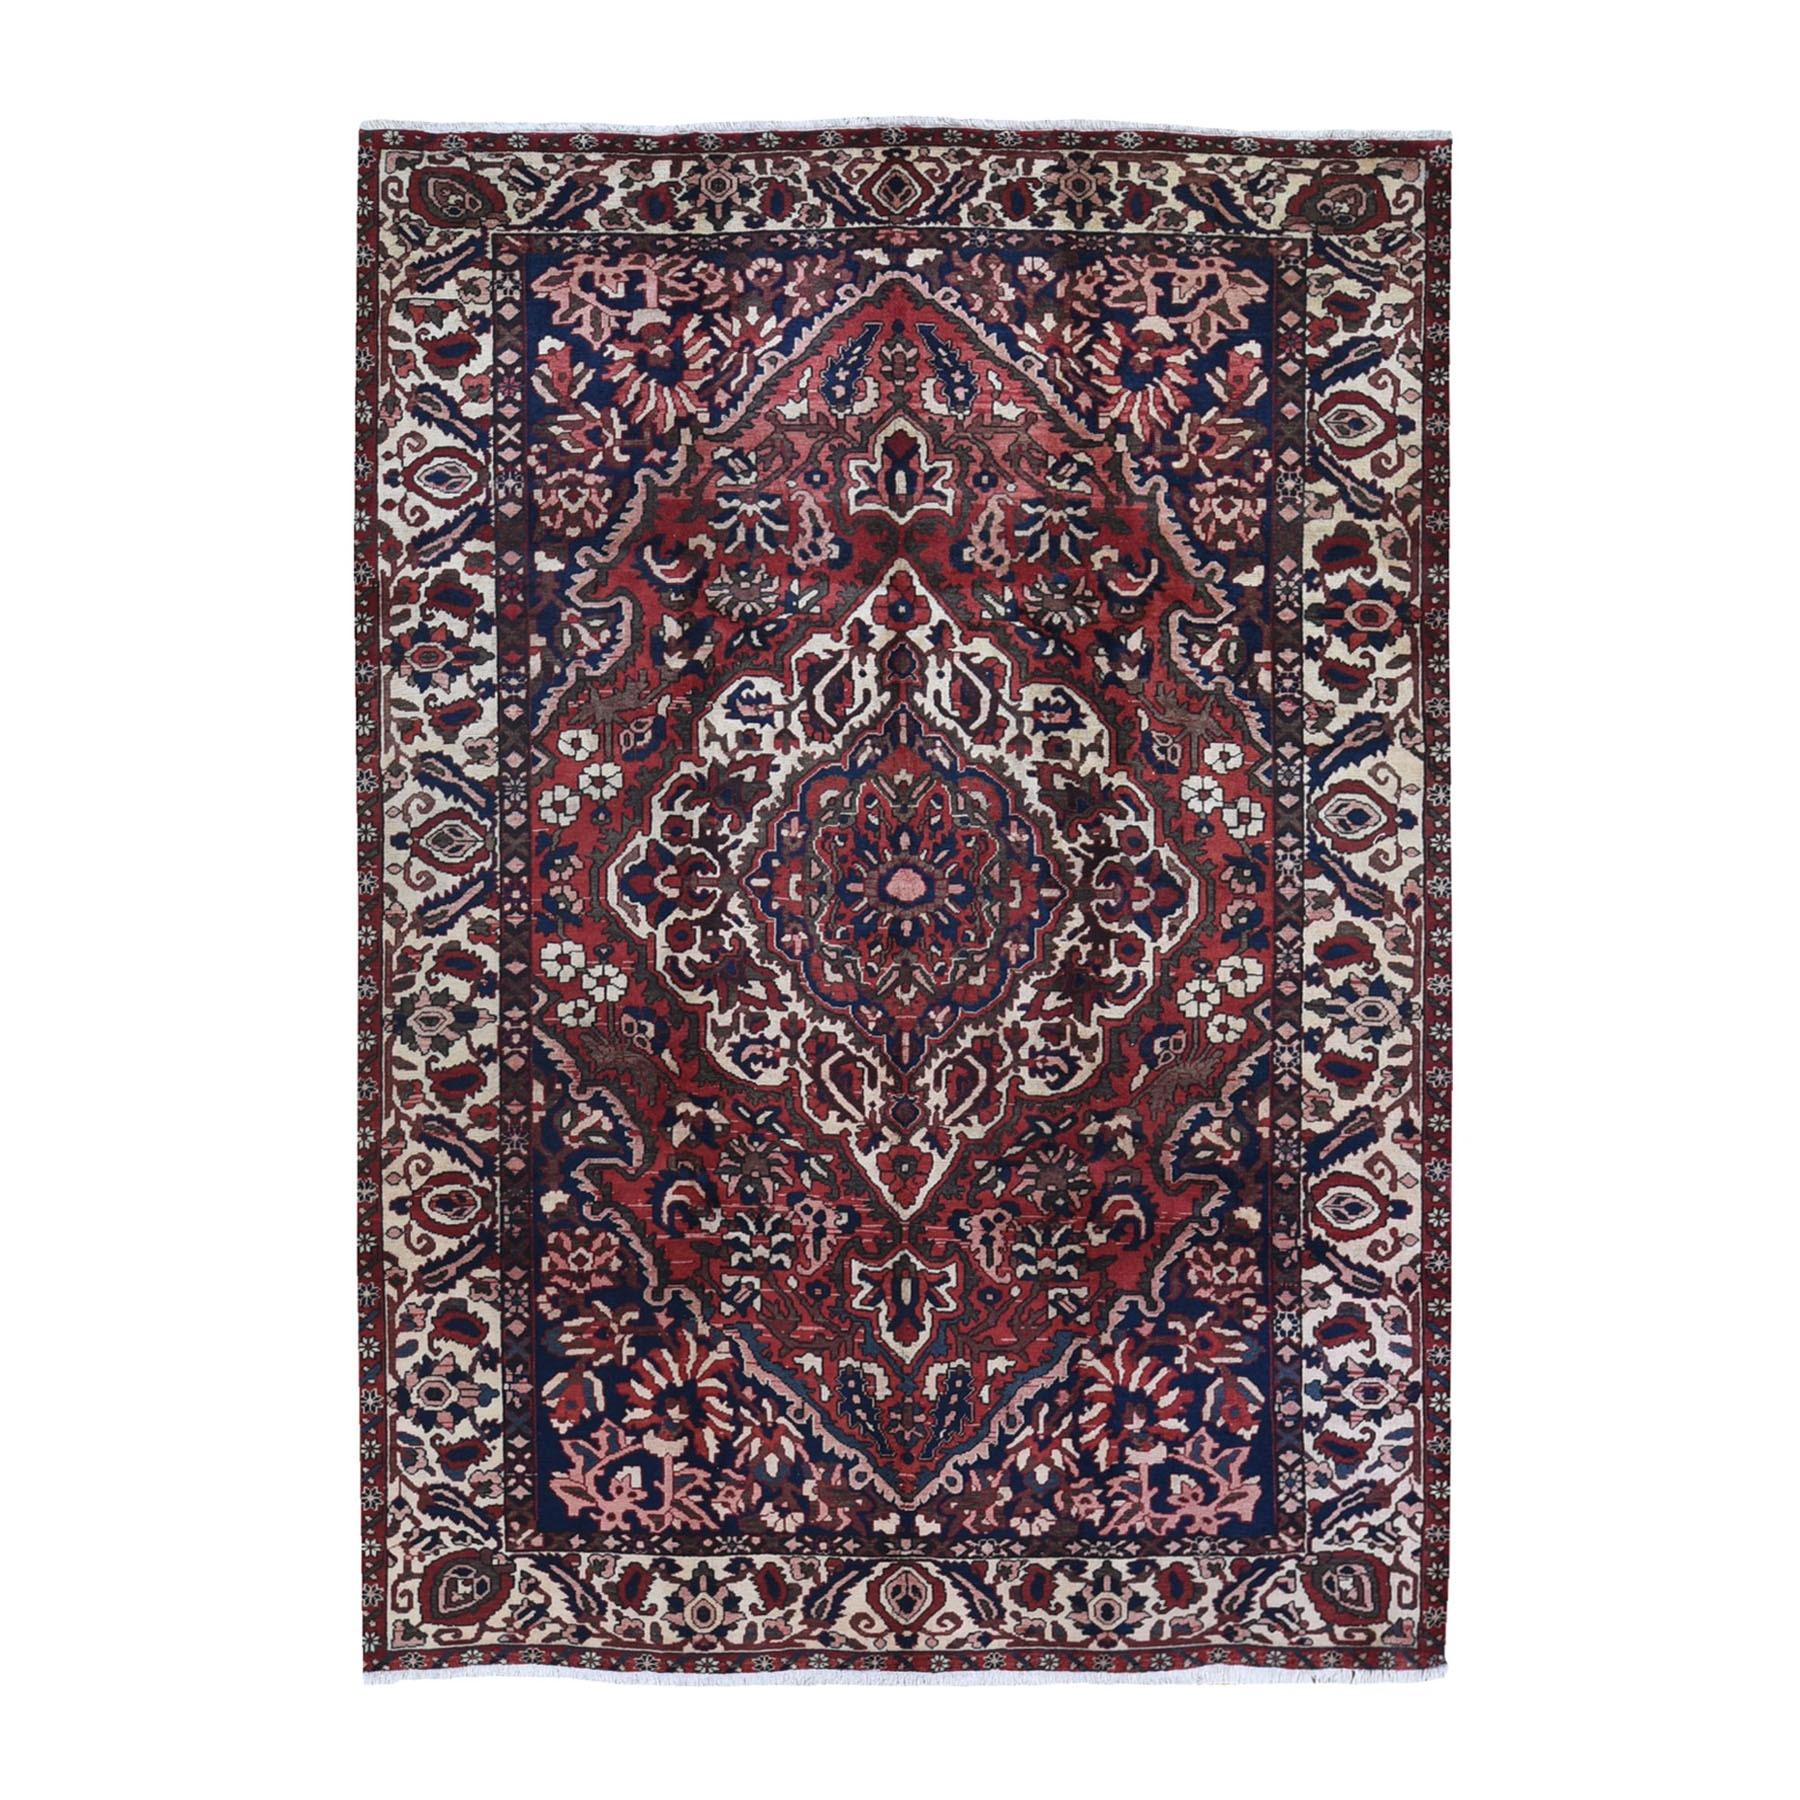 Roter handgeknüpfter persischer Bakhtiar-Teppich aus reiner Wolle in Rot, guter Zustand